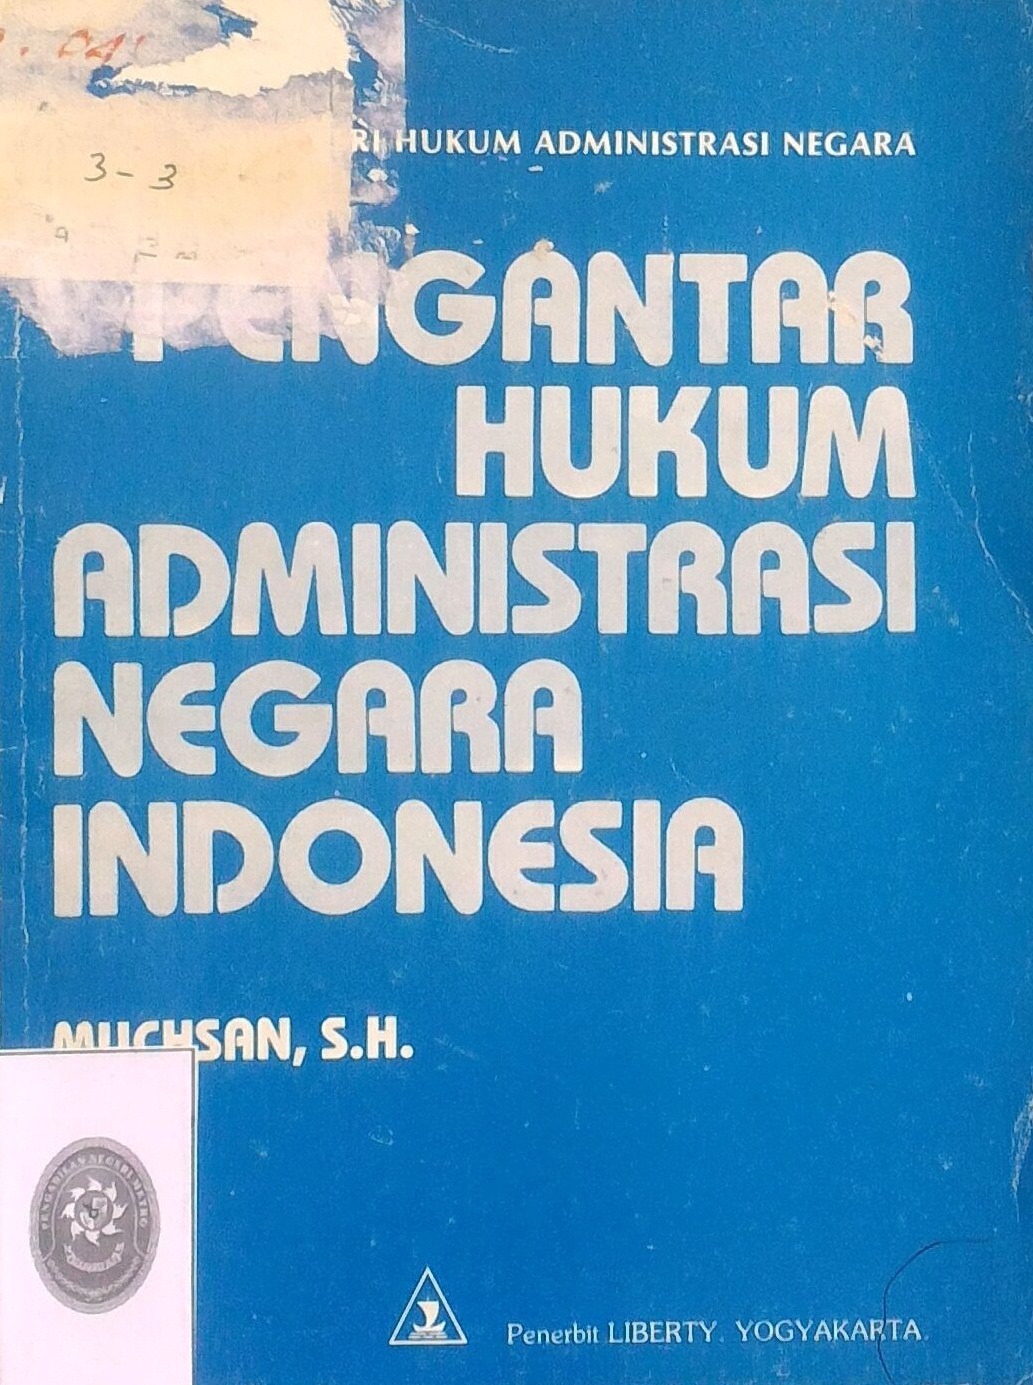 Seri Hukum Administrasi Negara, Pengantar Hukum Administrasi Negara Indonesia Tahun 1982